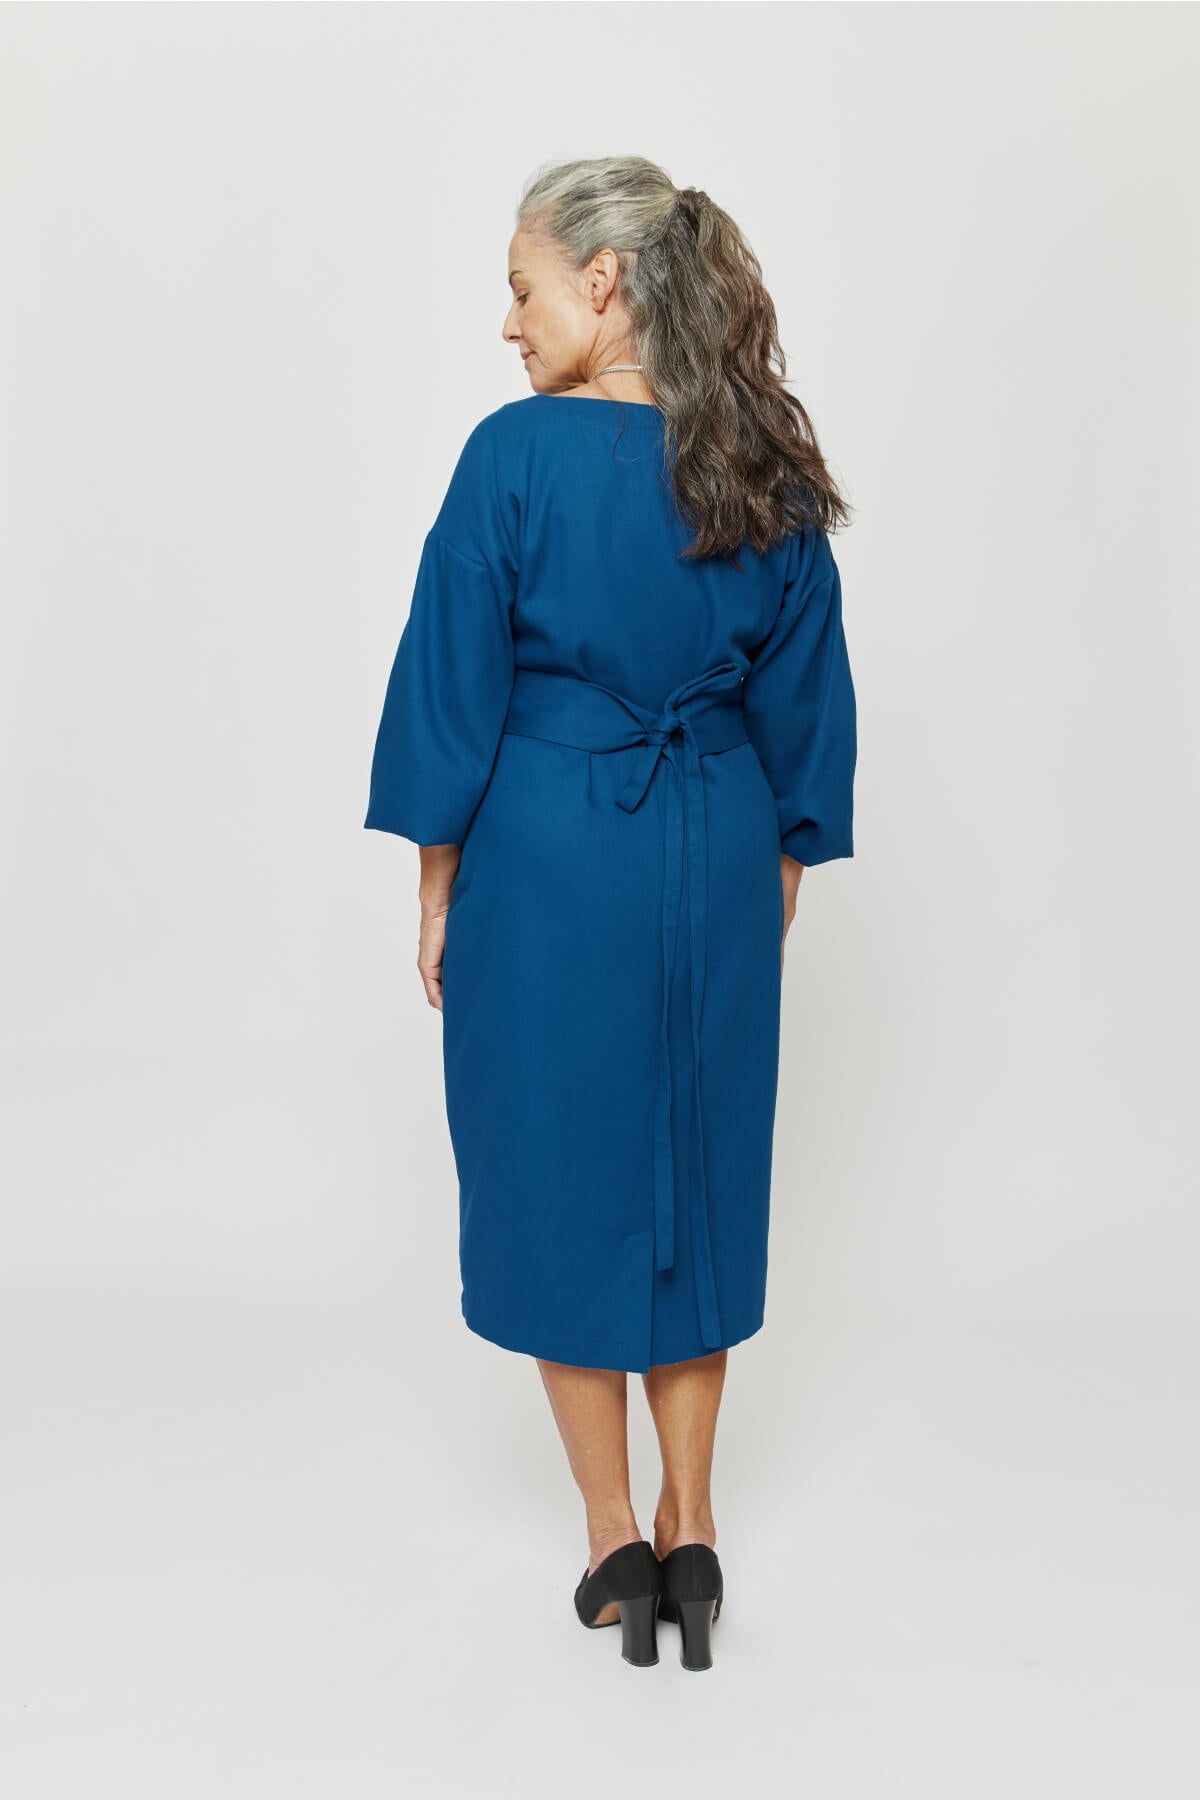 Blaues, langärmliges Kleid Stefanie aus 100% Bio-Baumwolle von Ayani